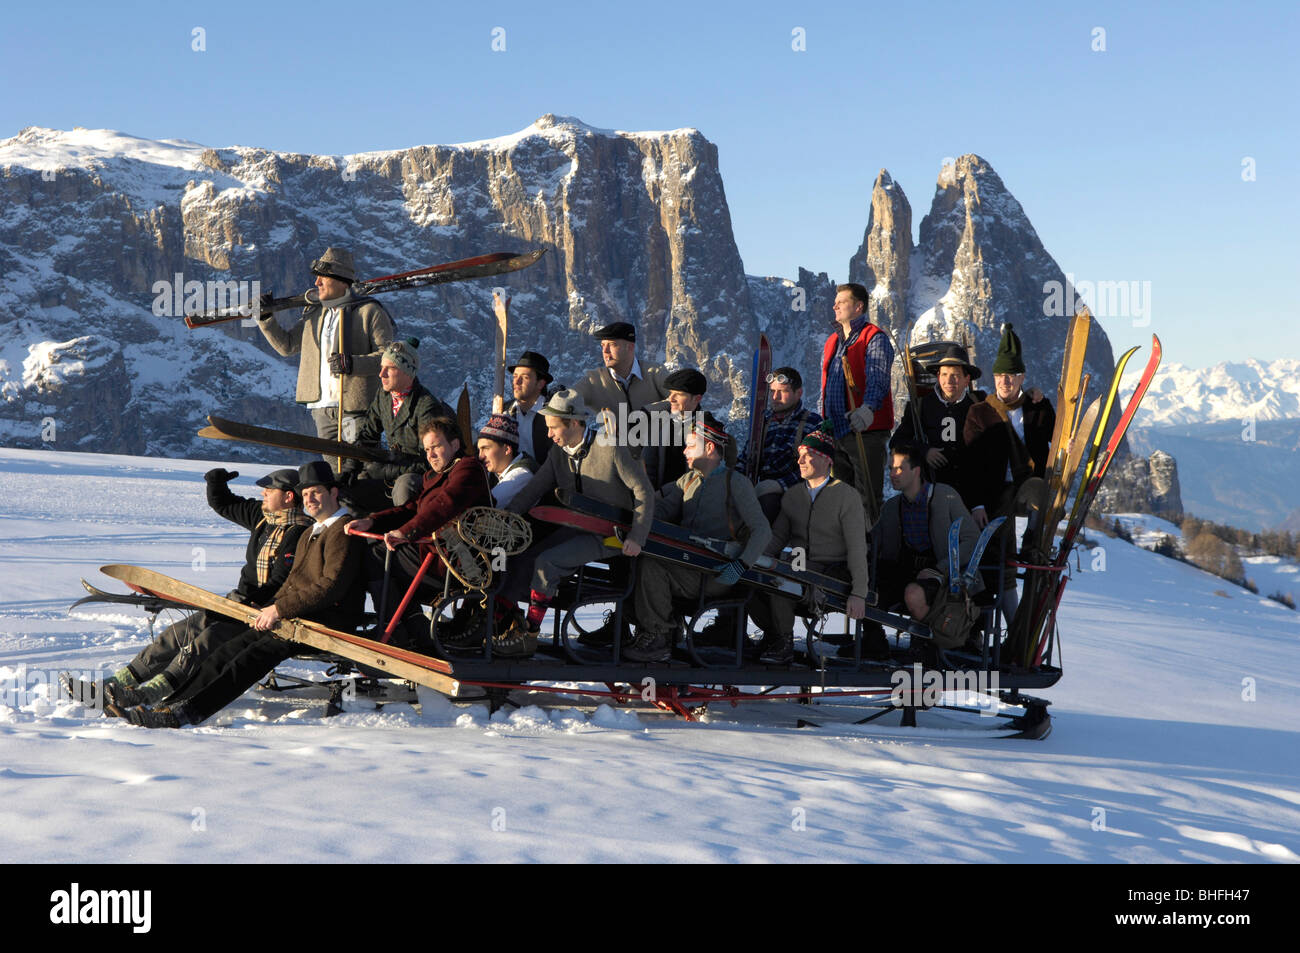 Group photograph, men on a sledge, Nostalgia, Seiser Alm, Schlern, South Tyrol, Italy Stock Photo